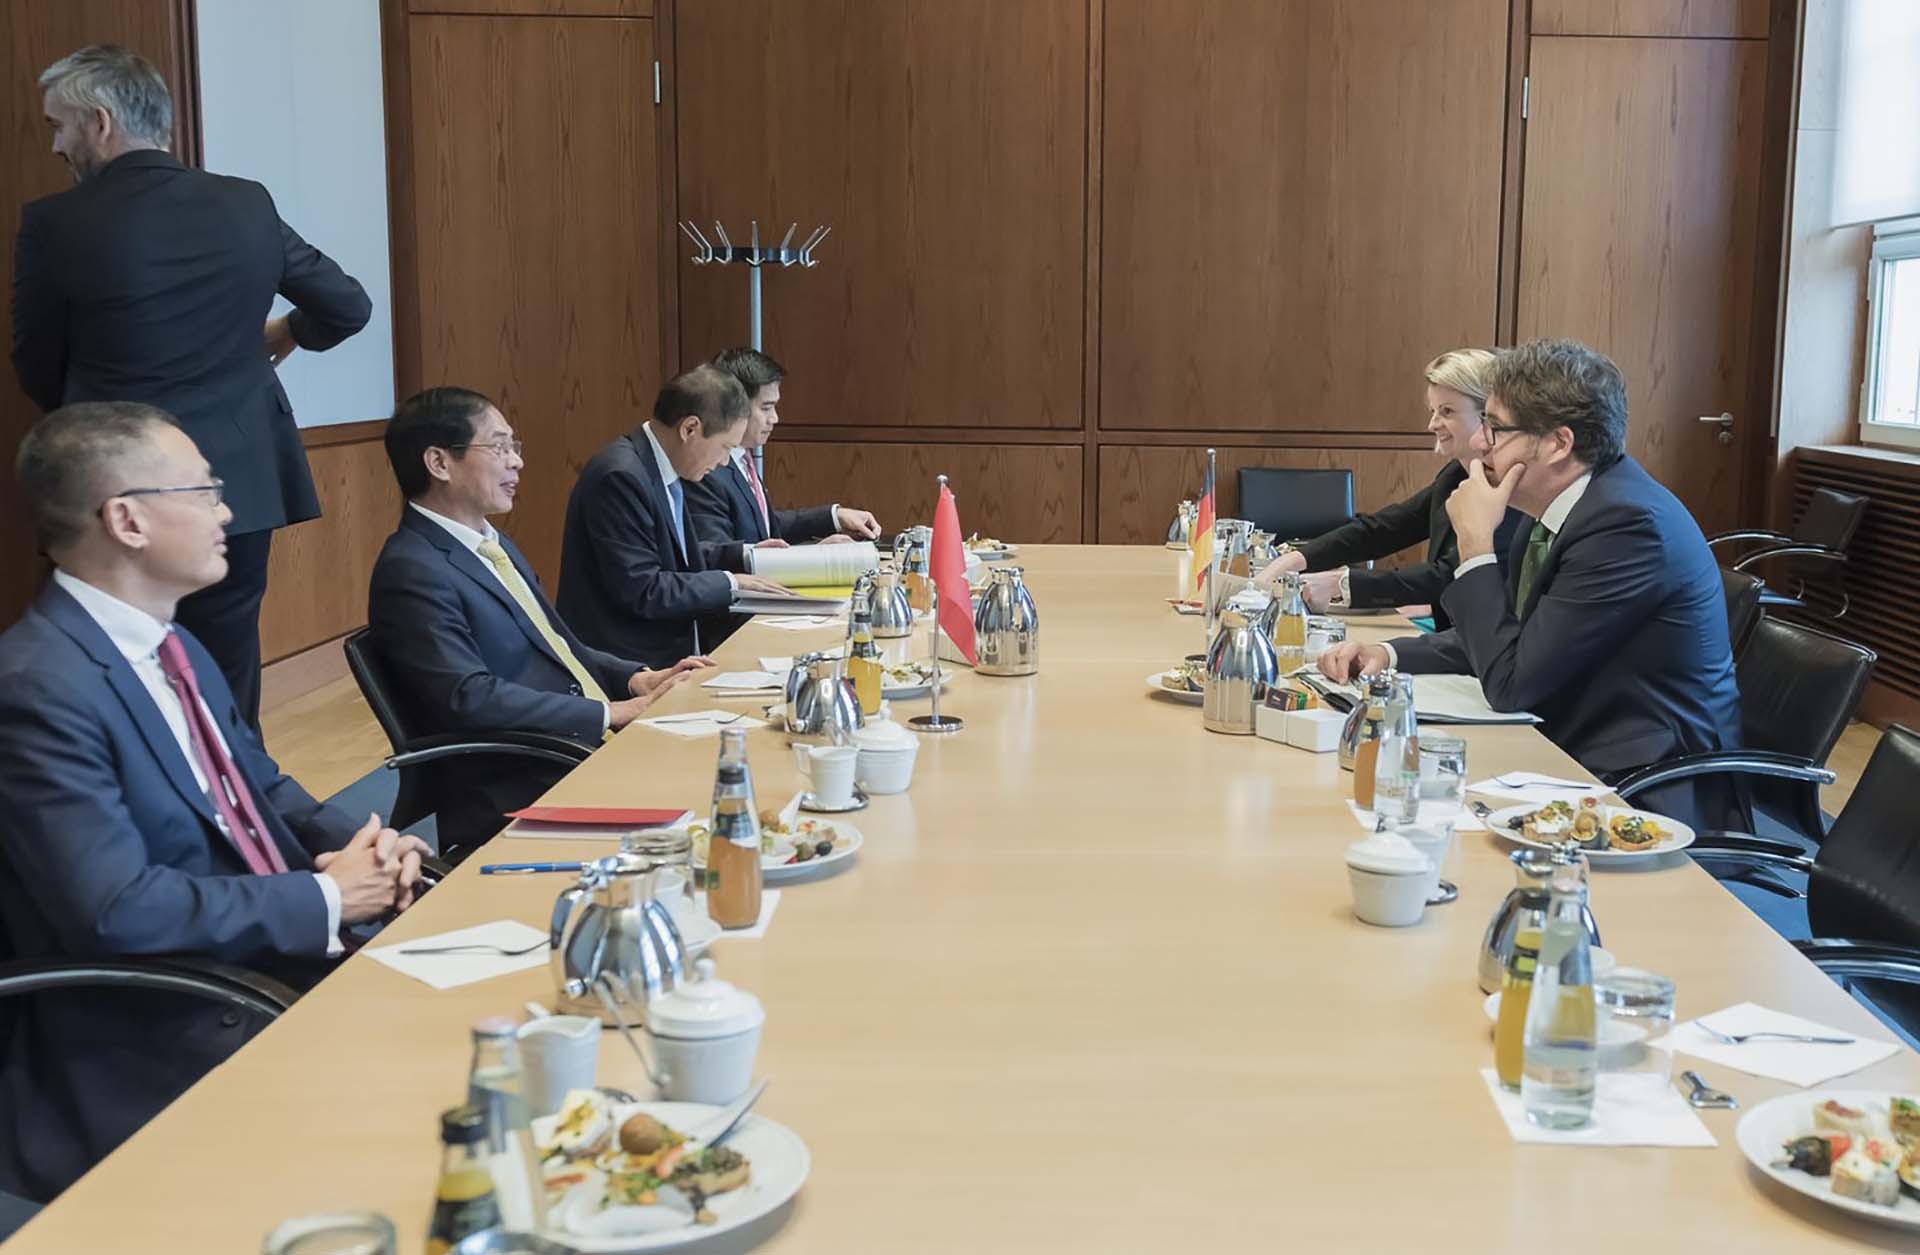 Bộ trưởng Ngoại giao Bùi Thanh Sơn gặp Quốc vụ khanh Nghị viện Bộ Kinh tế và Bảo vệ khí hậu liên bang Đức Michael Kellner.